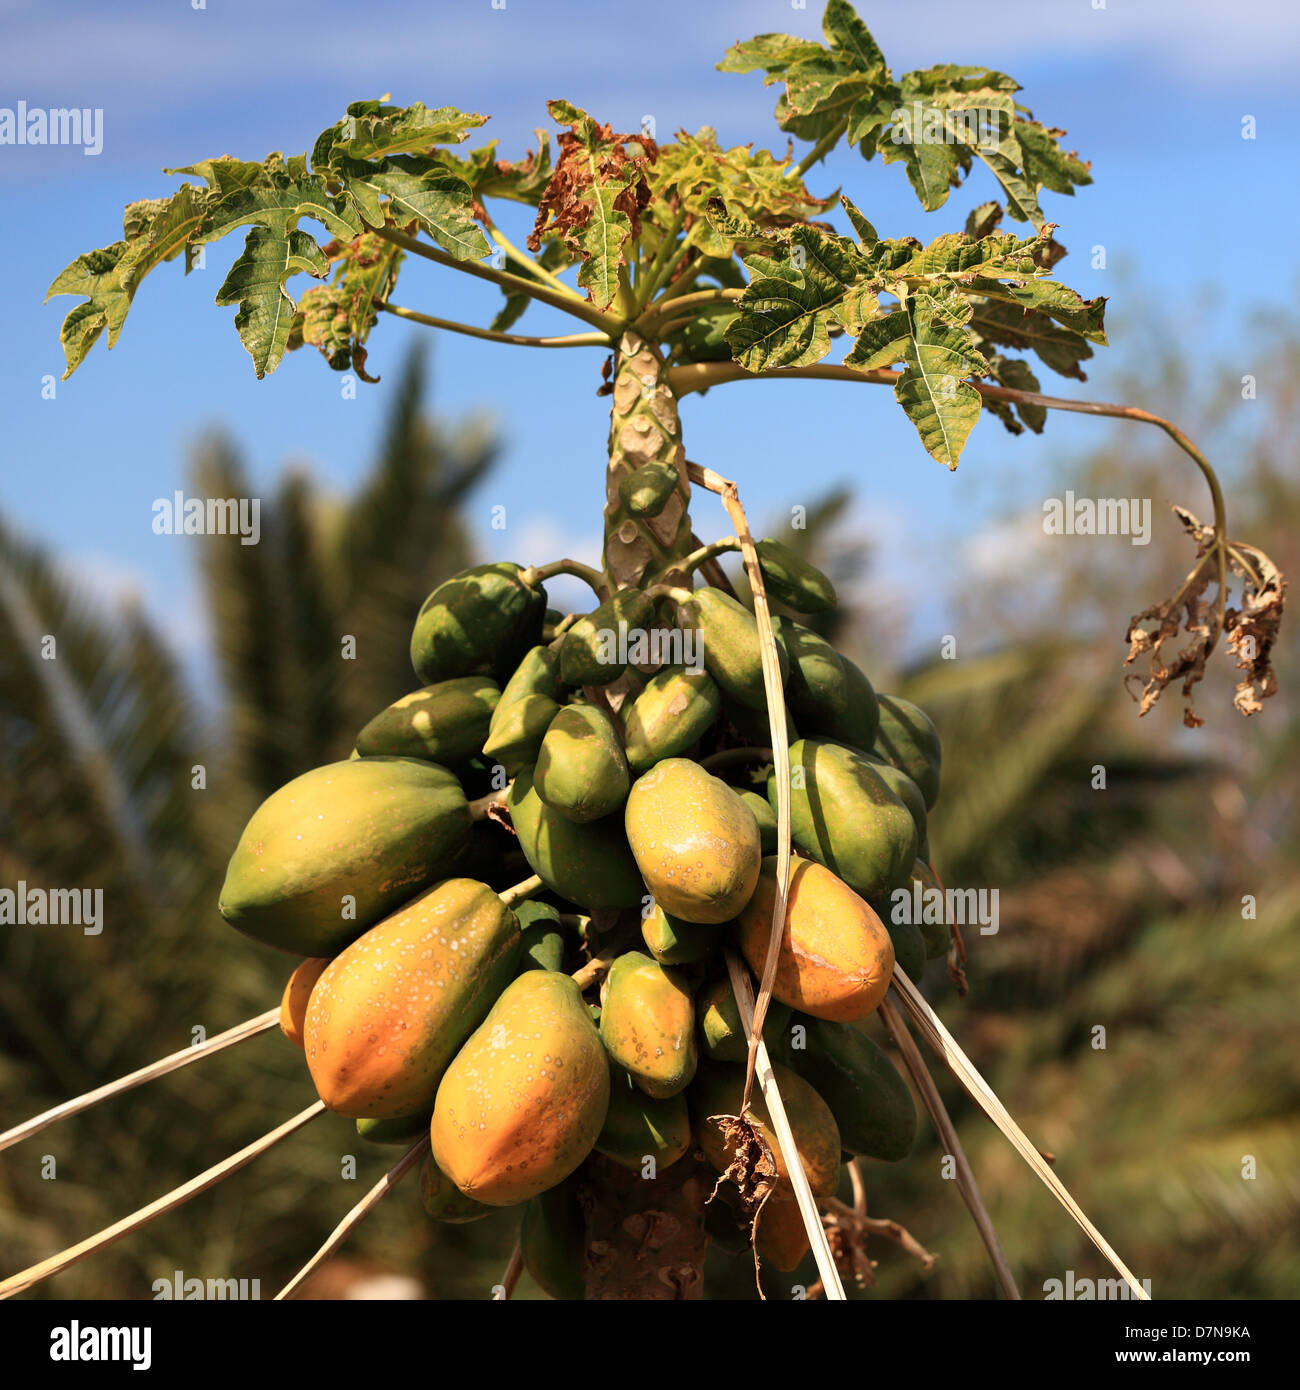 Papayabaum mit vielen Reife und Reife Papayas. Foto von Teneriffa, Kanarische Inseln, Spanien. Stockfoto